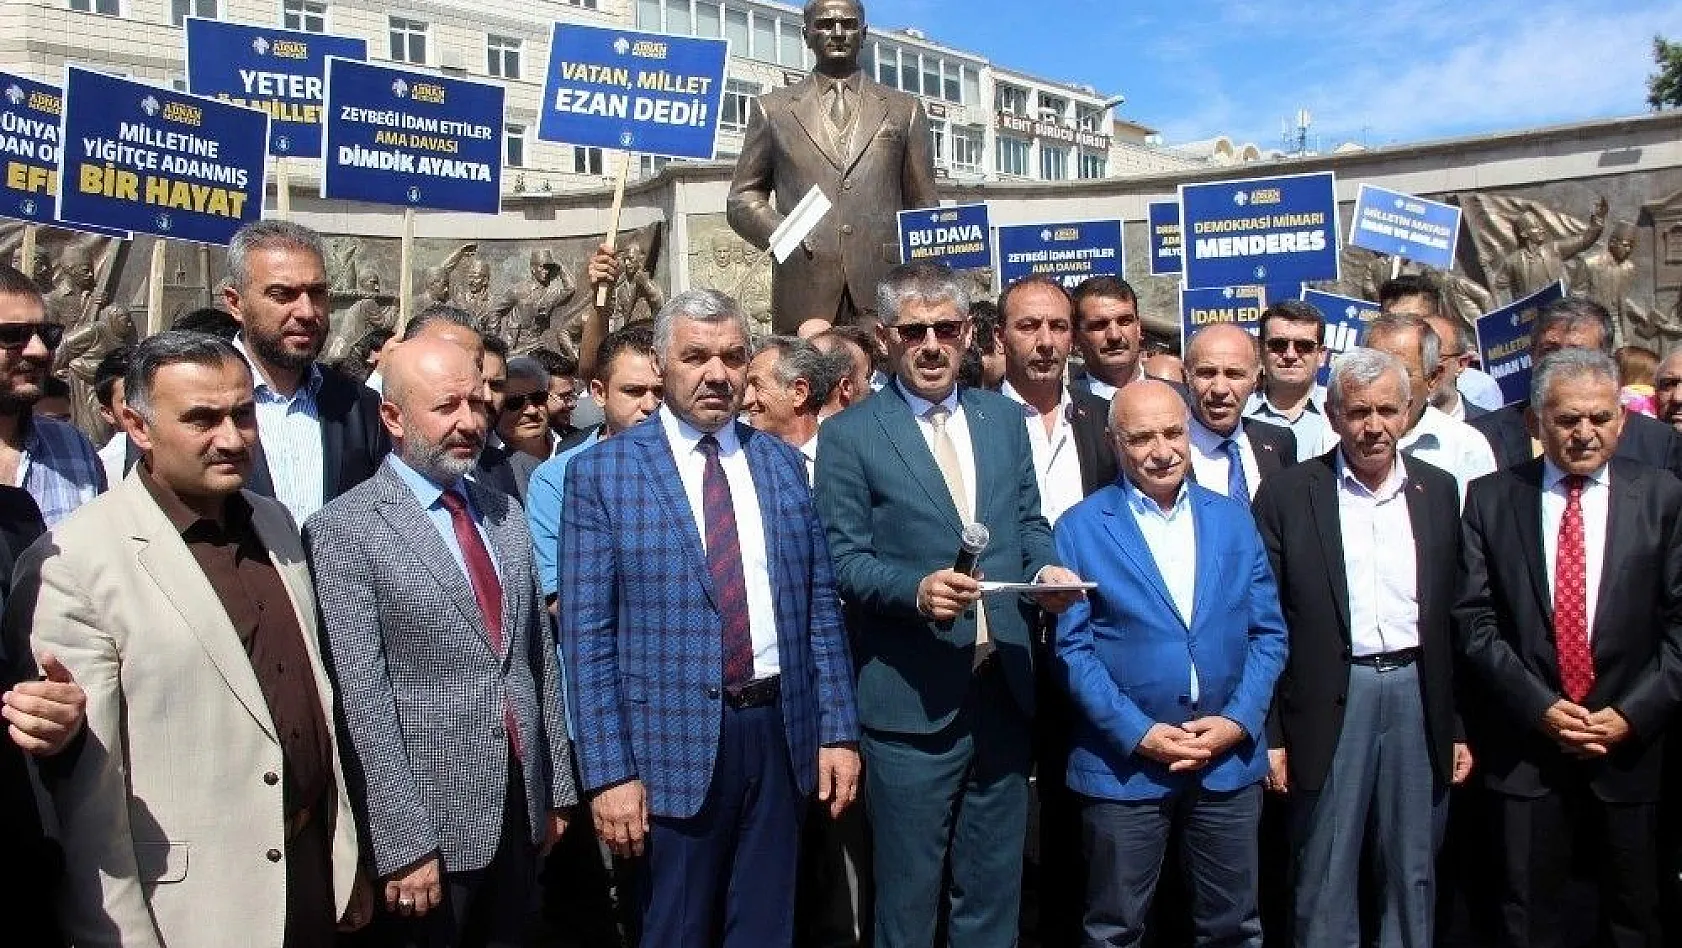 AK Parti İl Başkanı Çopuroğlu'dan 27 Mayıs açıklaması: FETÖ darbe girişiminin aynı kalemden çıktığı anlaşılmaktadır